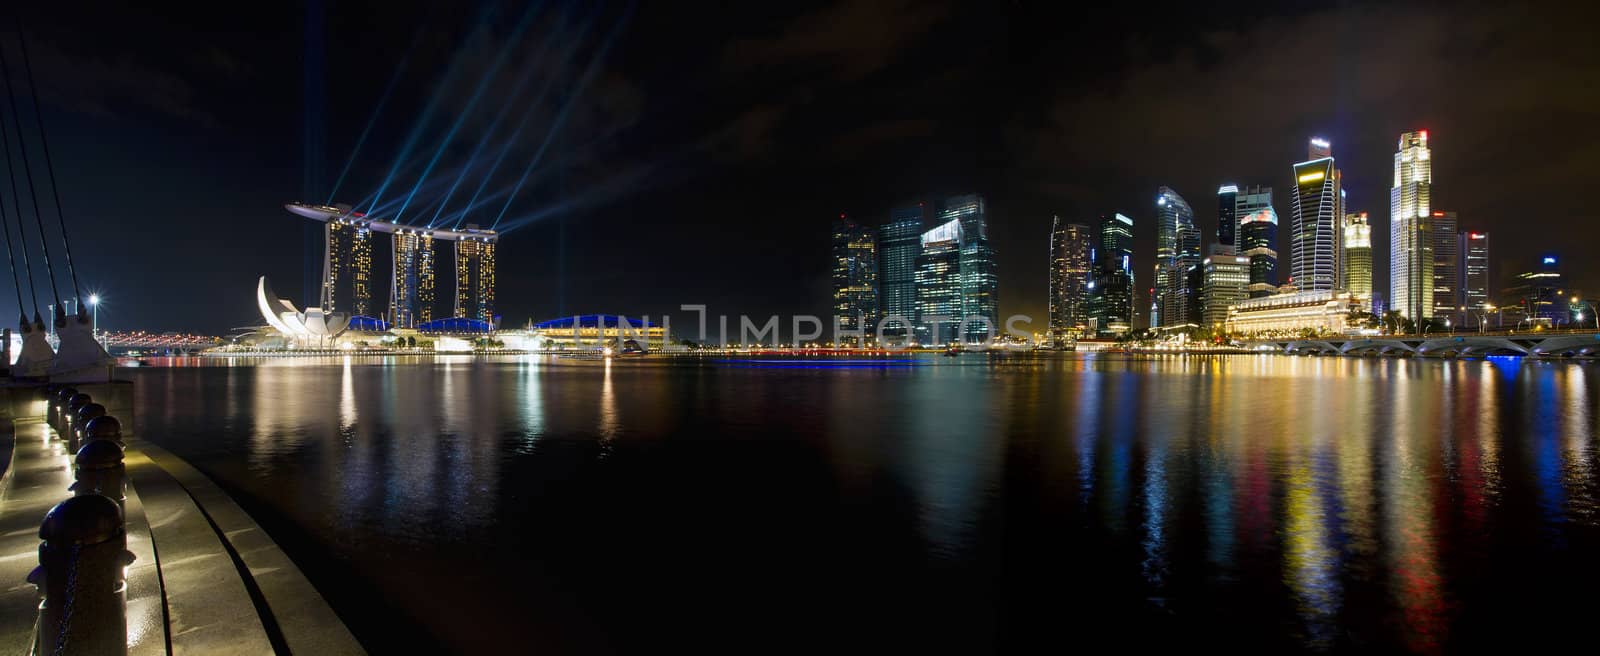 Singapore City Skyline at Night Panorama by jpldesigns